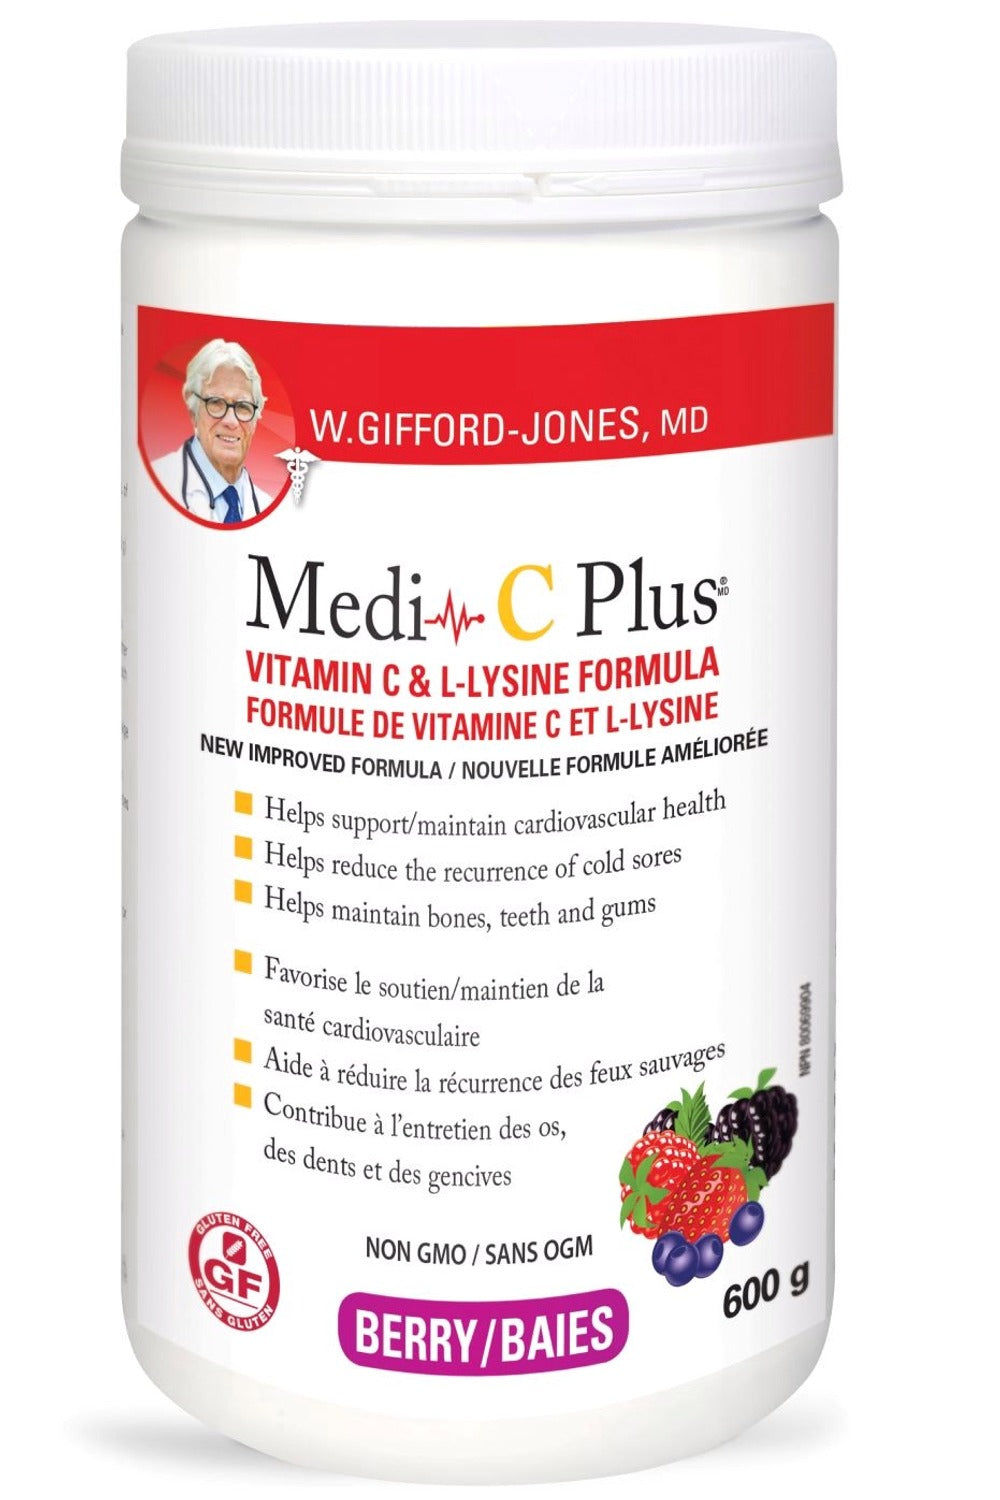 W.GIFFORD-JONES Medi C Plus w/ Calcium (Berry - 600 g)